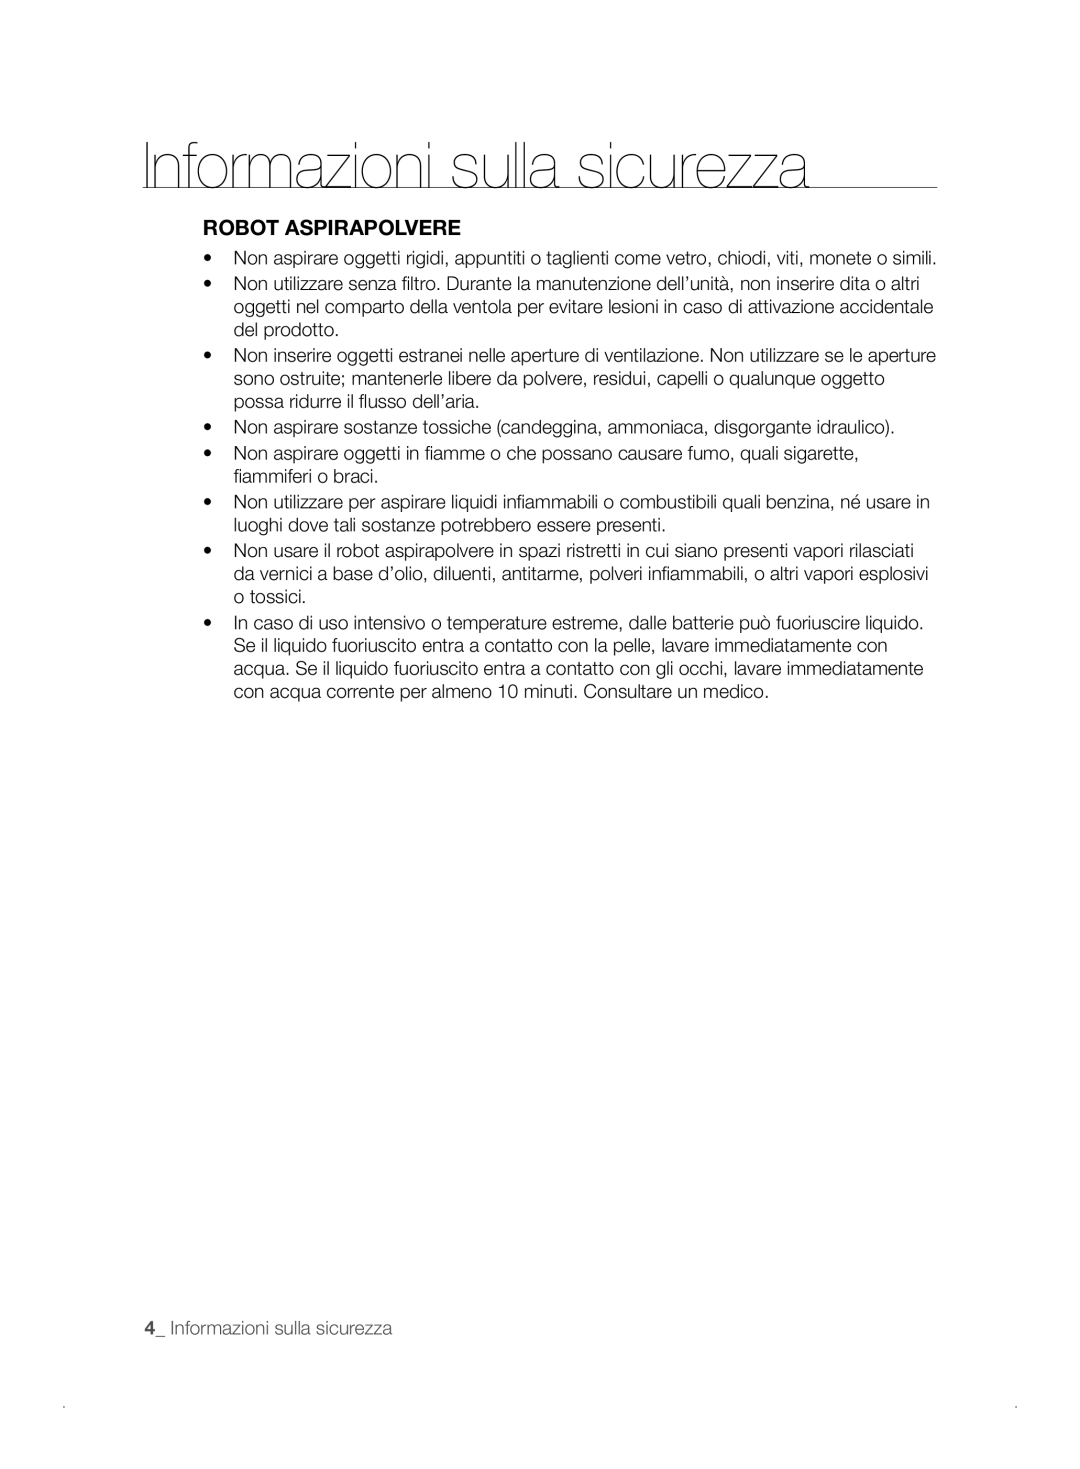 Samsung VCR8841T3B/XEF manual Robot Aspirapolvere, Informazioni sulla sicurezza 